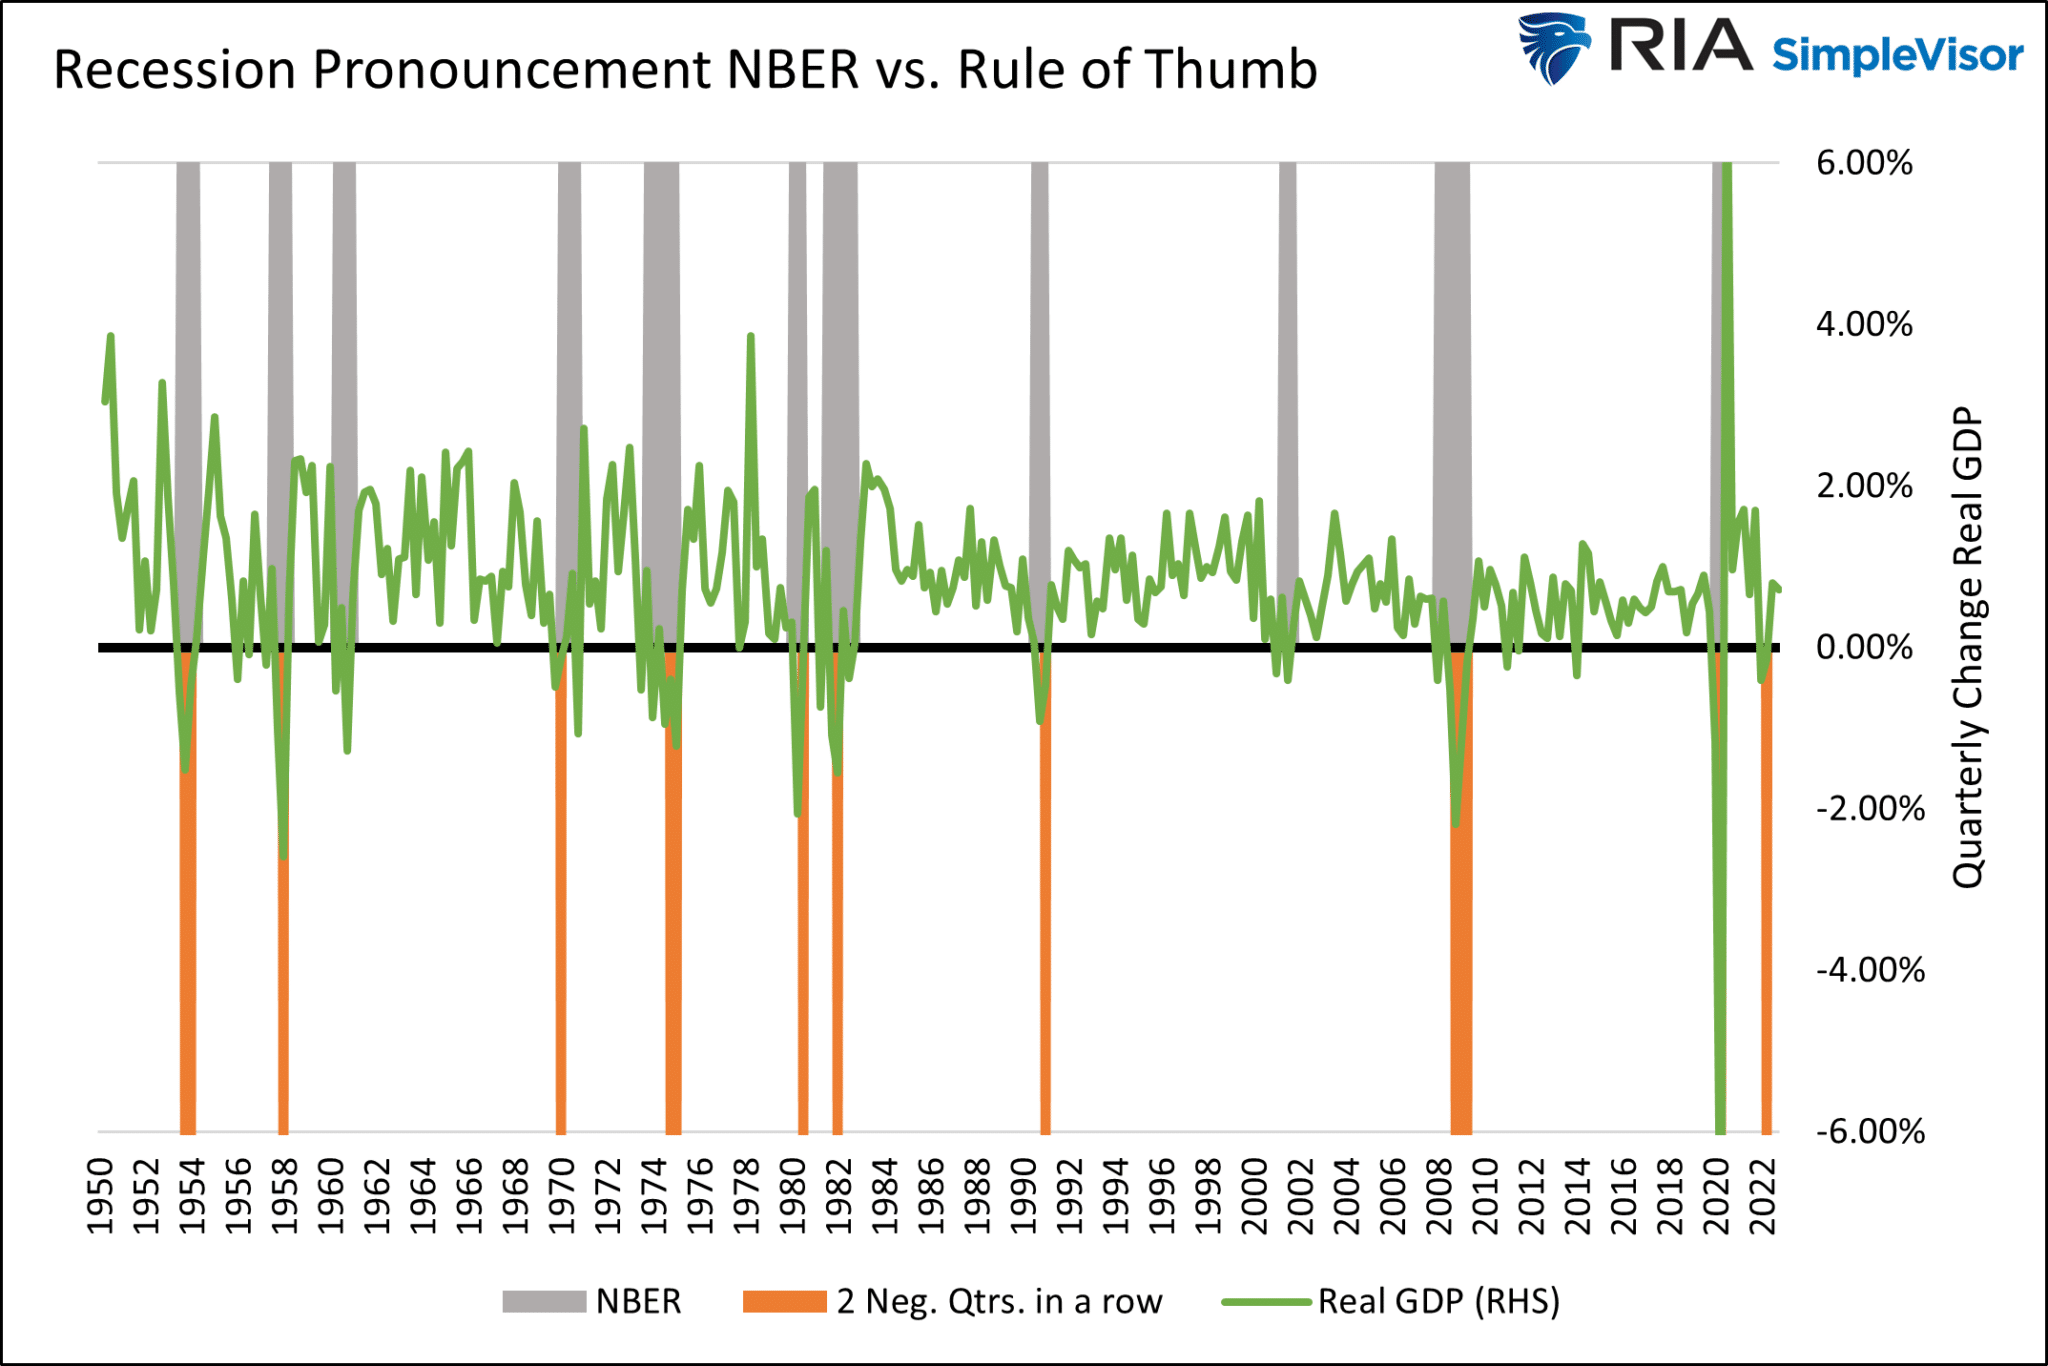 Рецессии согласно NBER и по приблизительному правилу